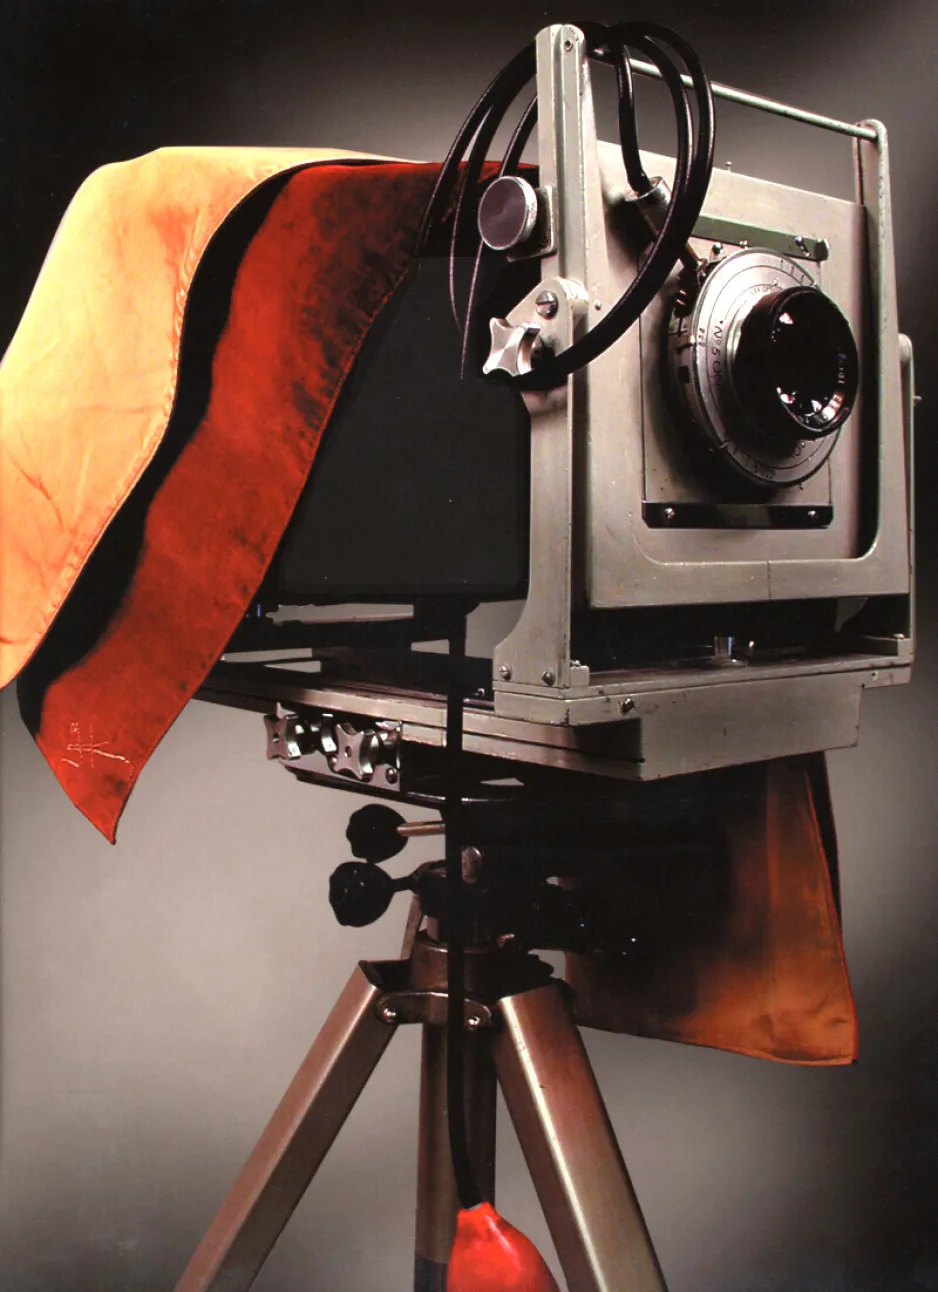 Le Calumet 8 po × 10 po à soufflet, principal appareil photo de Karsh, drapé d’un voile de mise au point confectionné pour Karsh par son assistante et bibliothécaire Hella Graber 